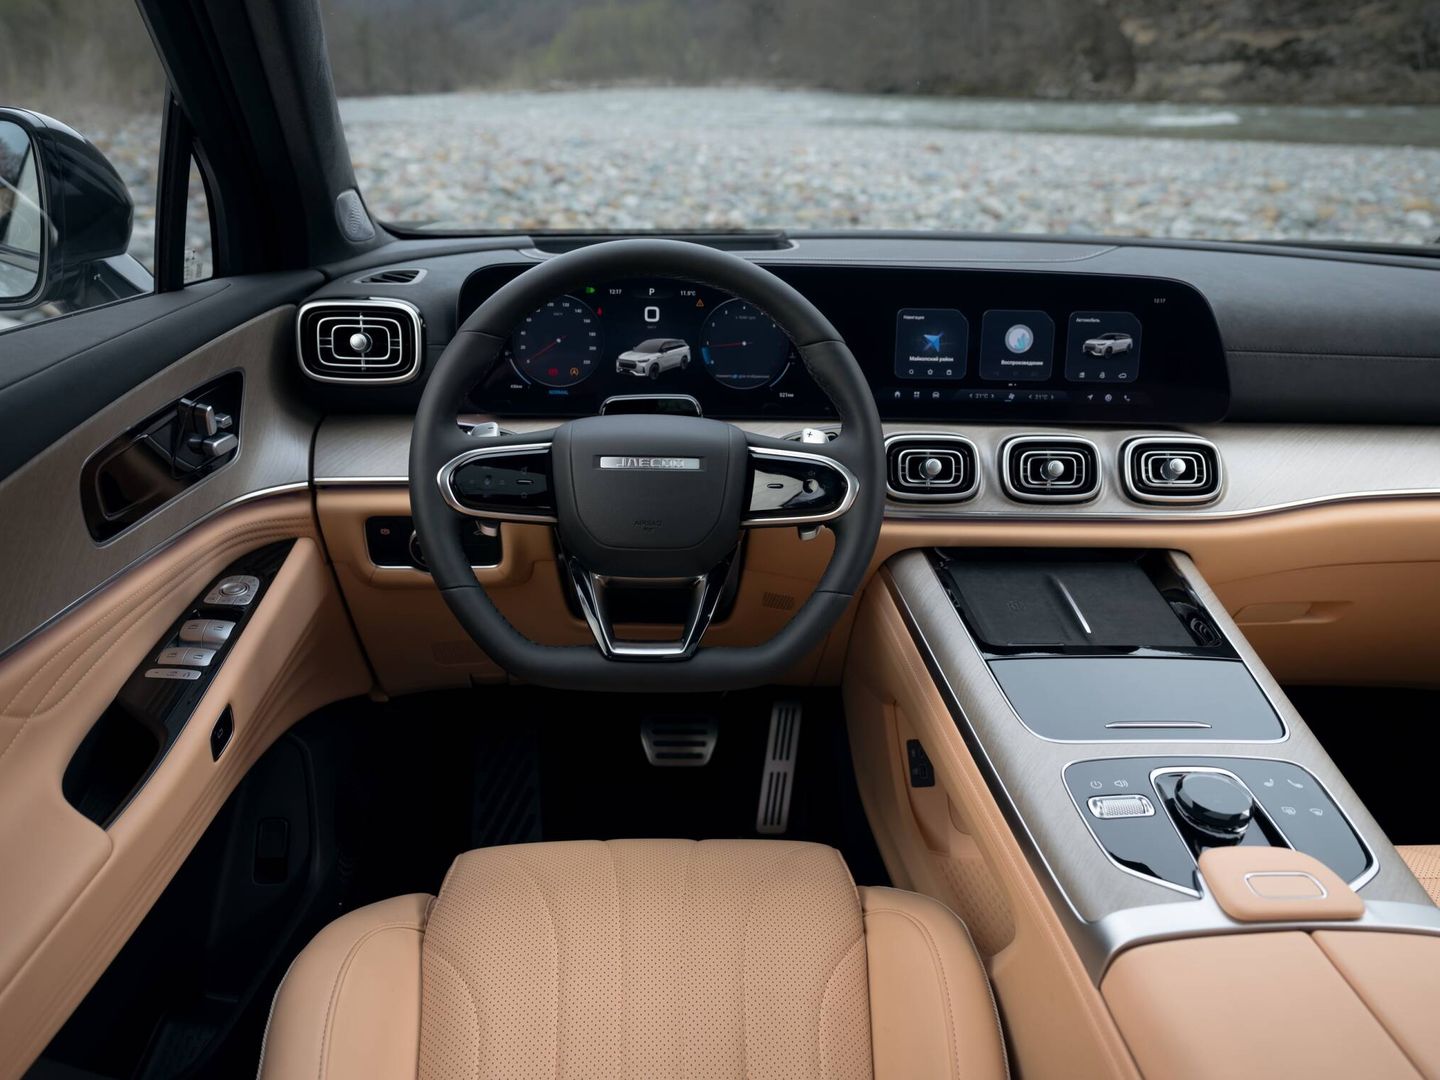 En el interior del J8 se percibe una cierta inspiración de Mercedes-Benz. Y muy buena calidad.